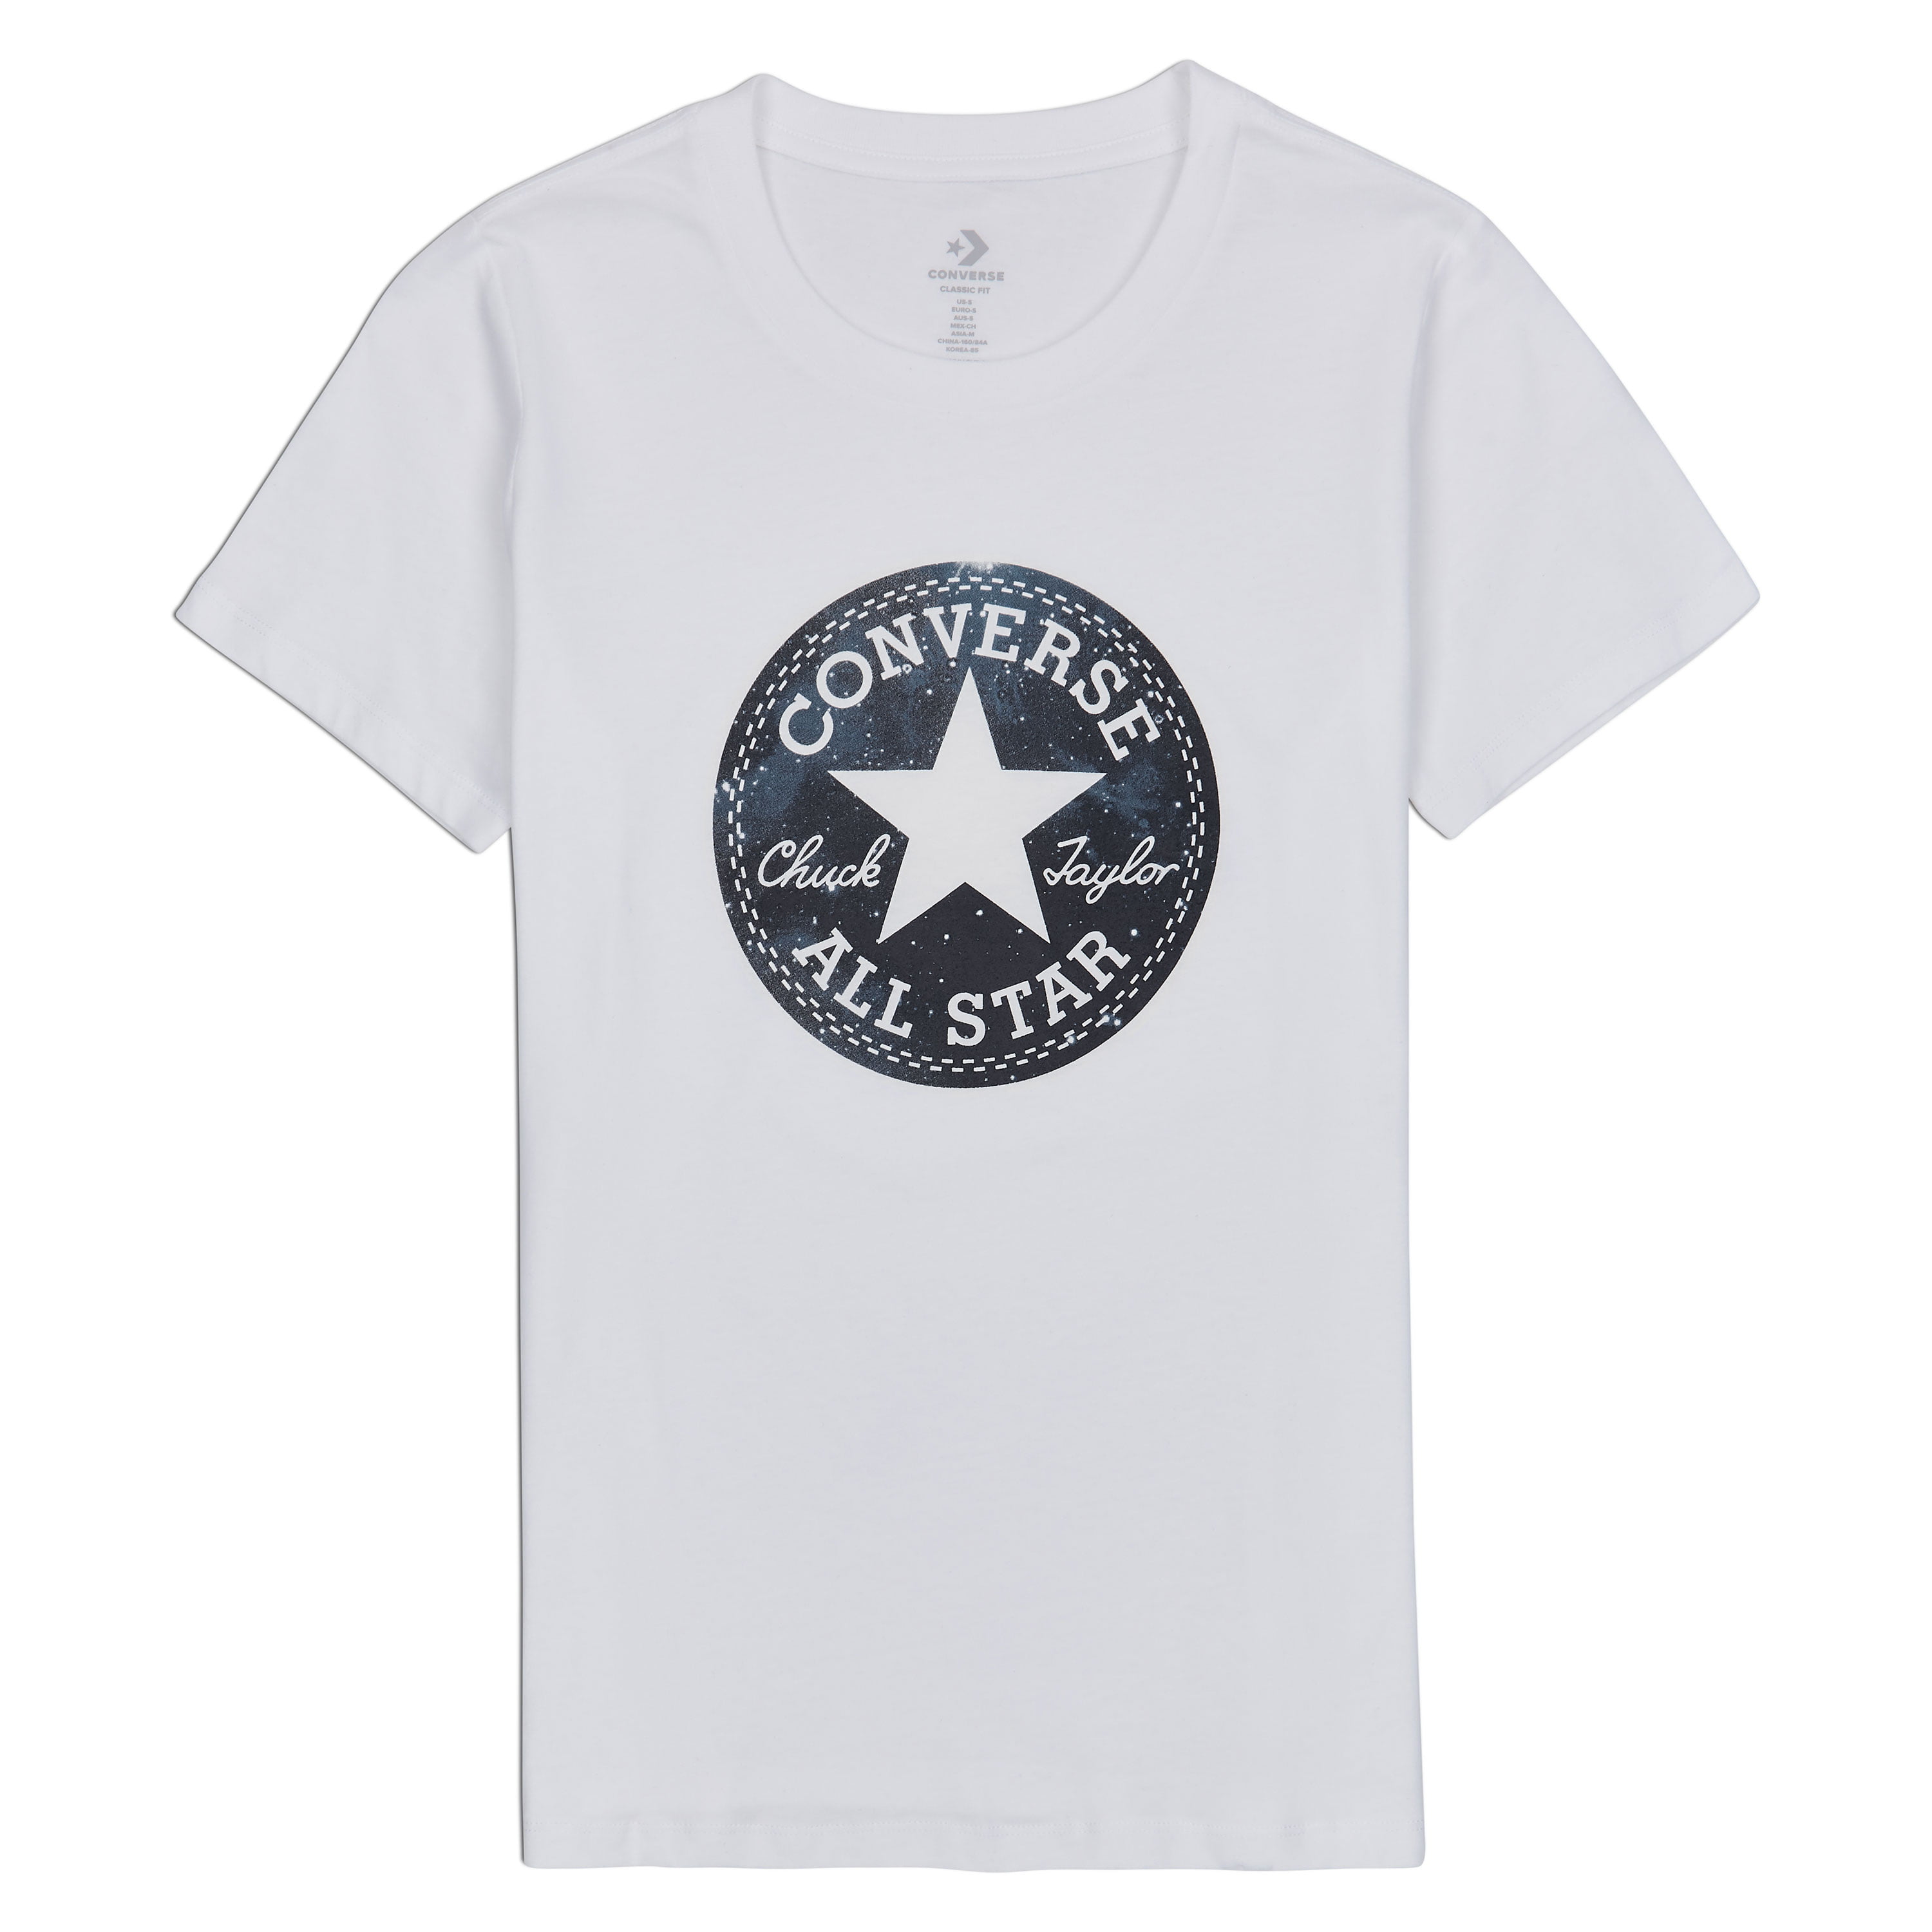 Converse Mens T-Shirts - Walmart.com